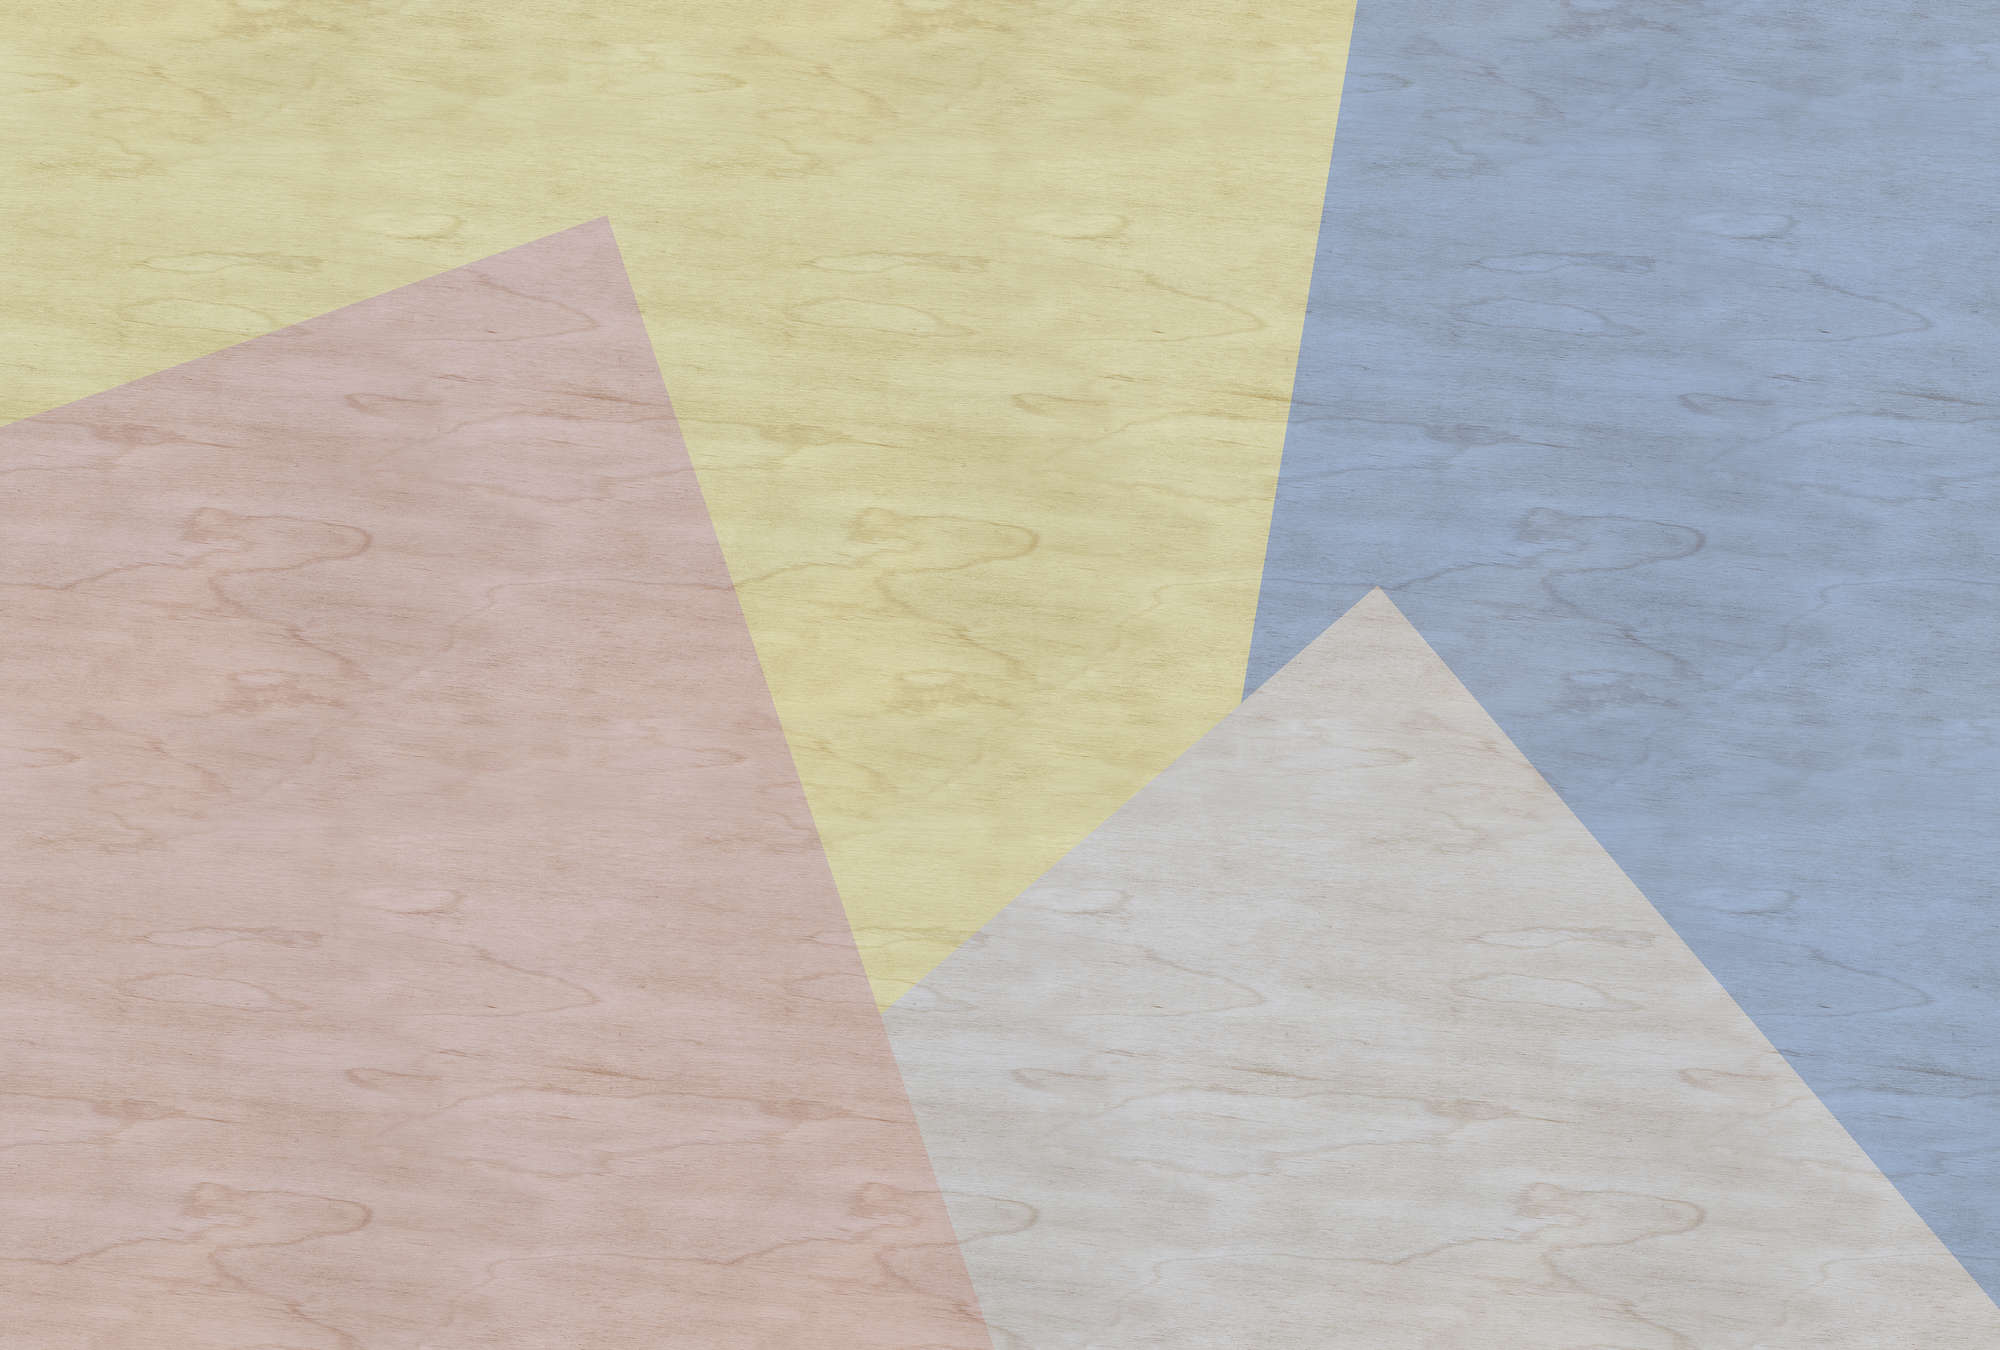             Inaly 3 - Papel pintado abstracto y colorido - Estructura de contrachapado - Beige, Azul | Liso mate
        